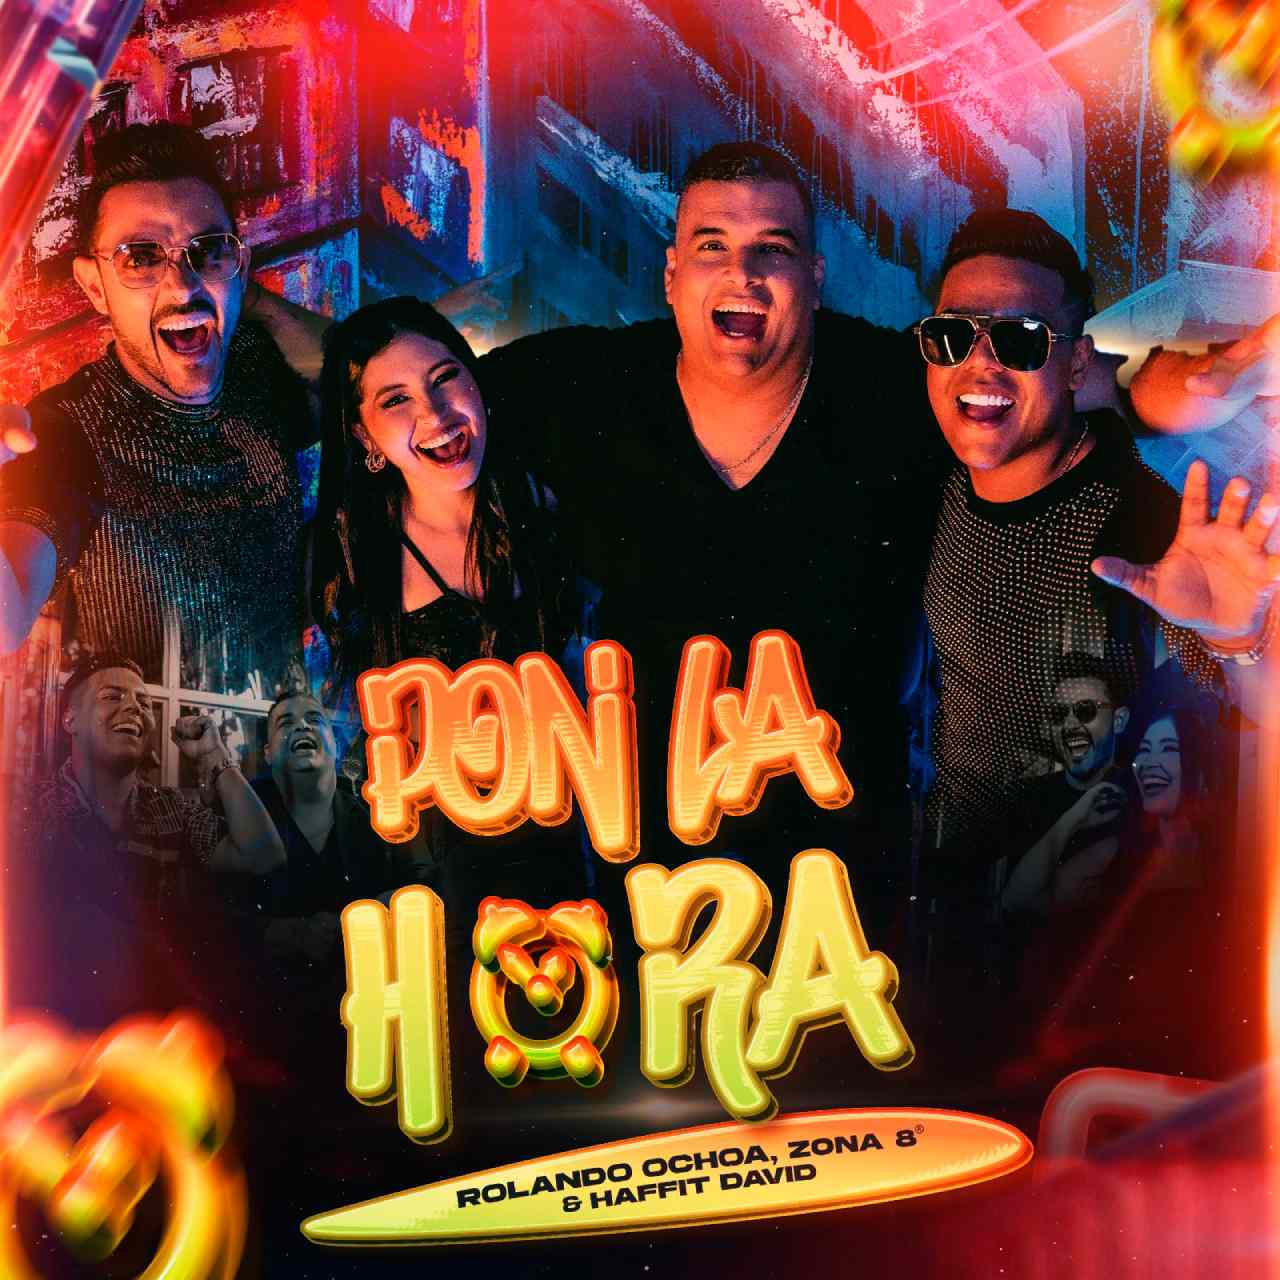 Rolando Ochoa, Zona 8 y Haffit David revolucionan el vallenato con «Pon La Hora»